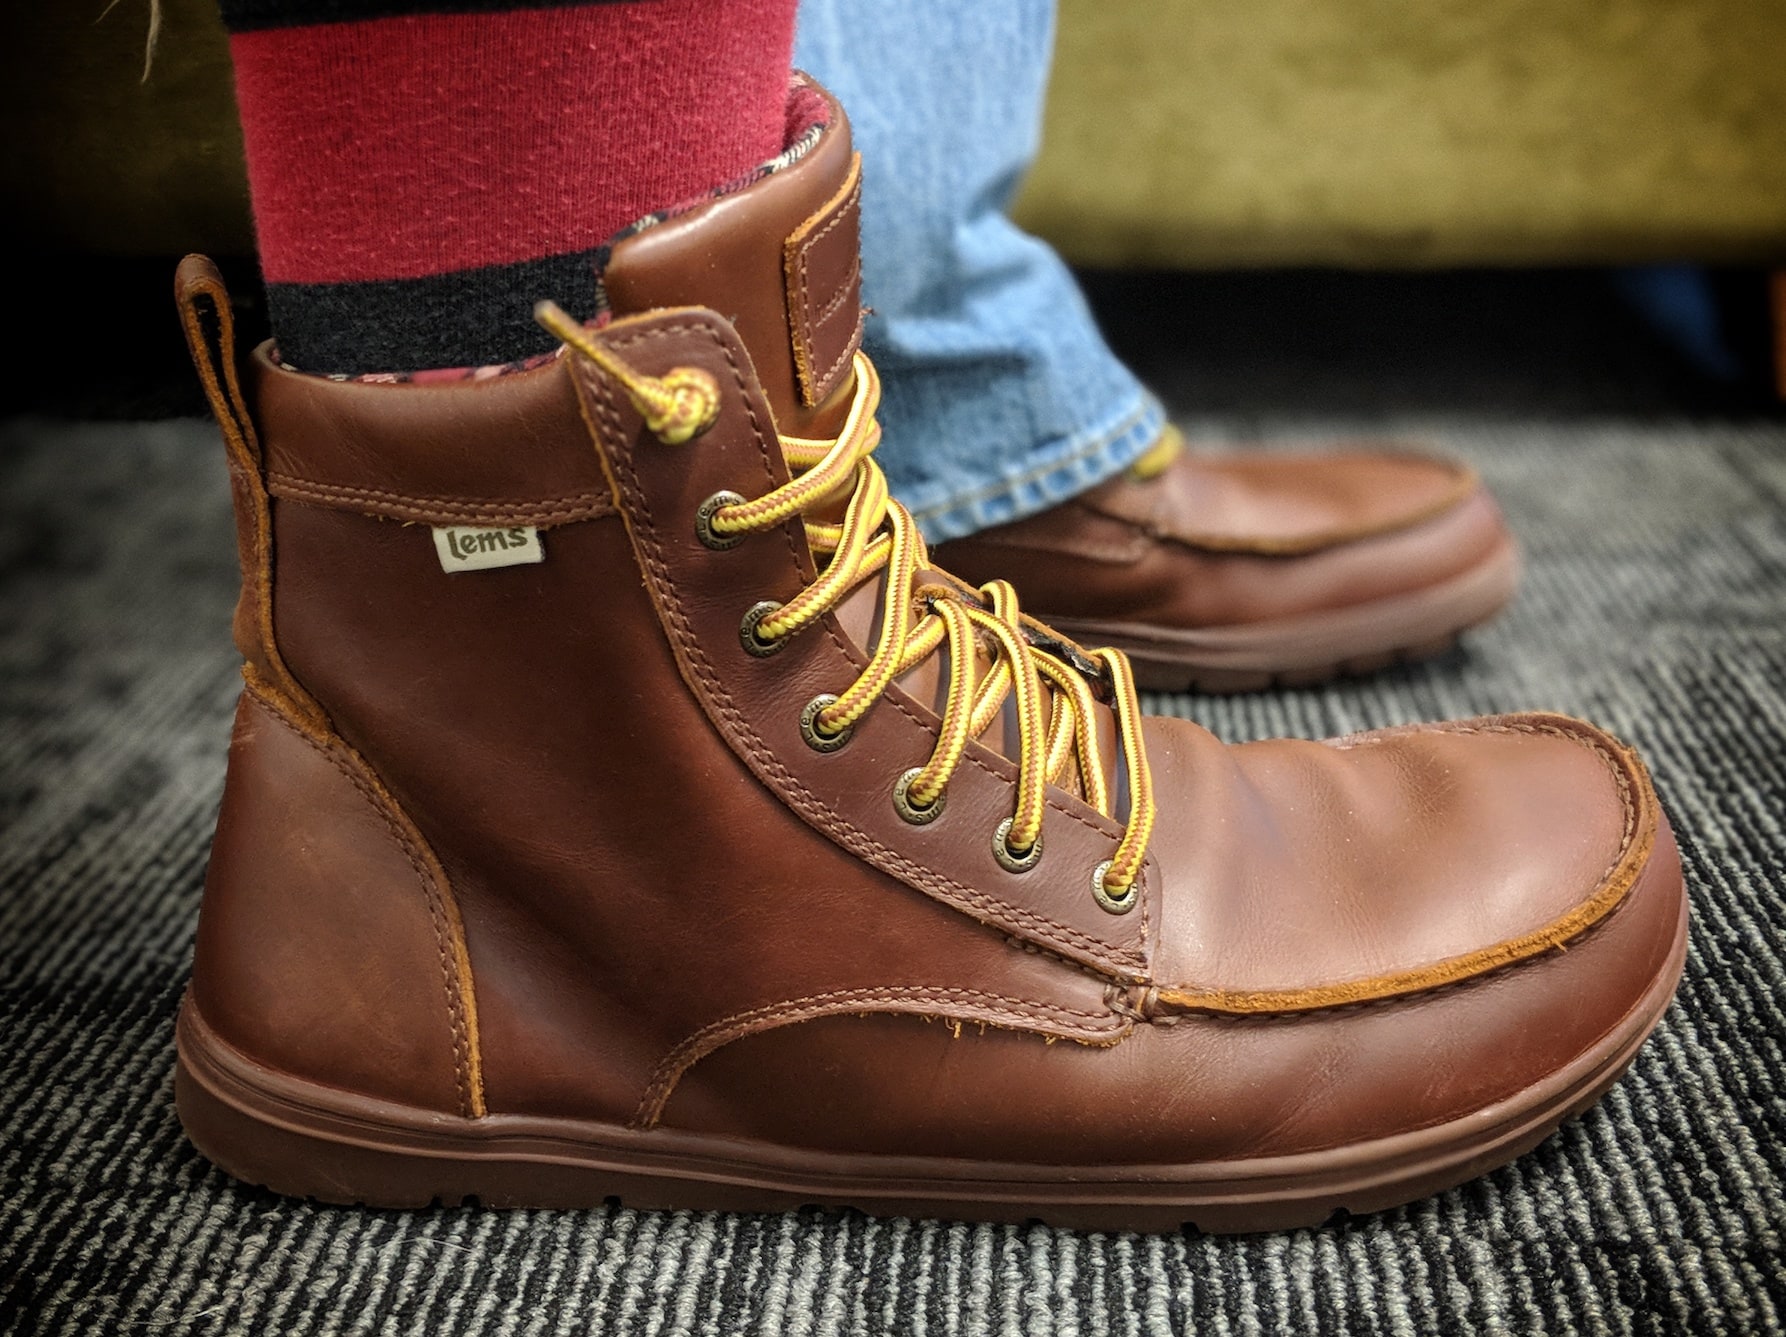 men's boulder boot leather